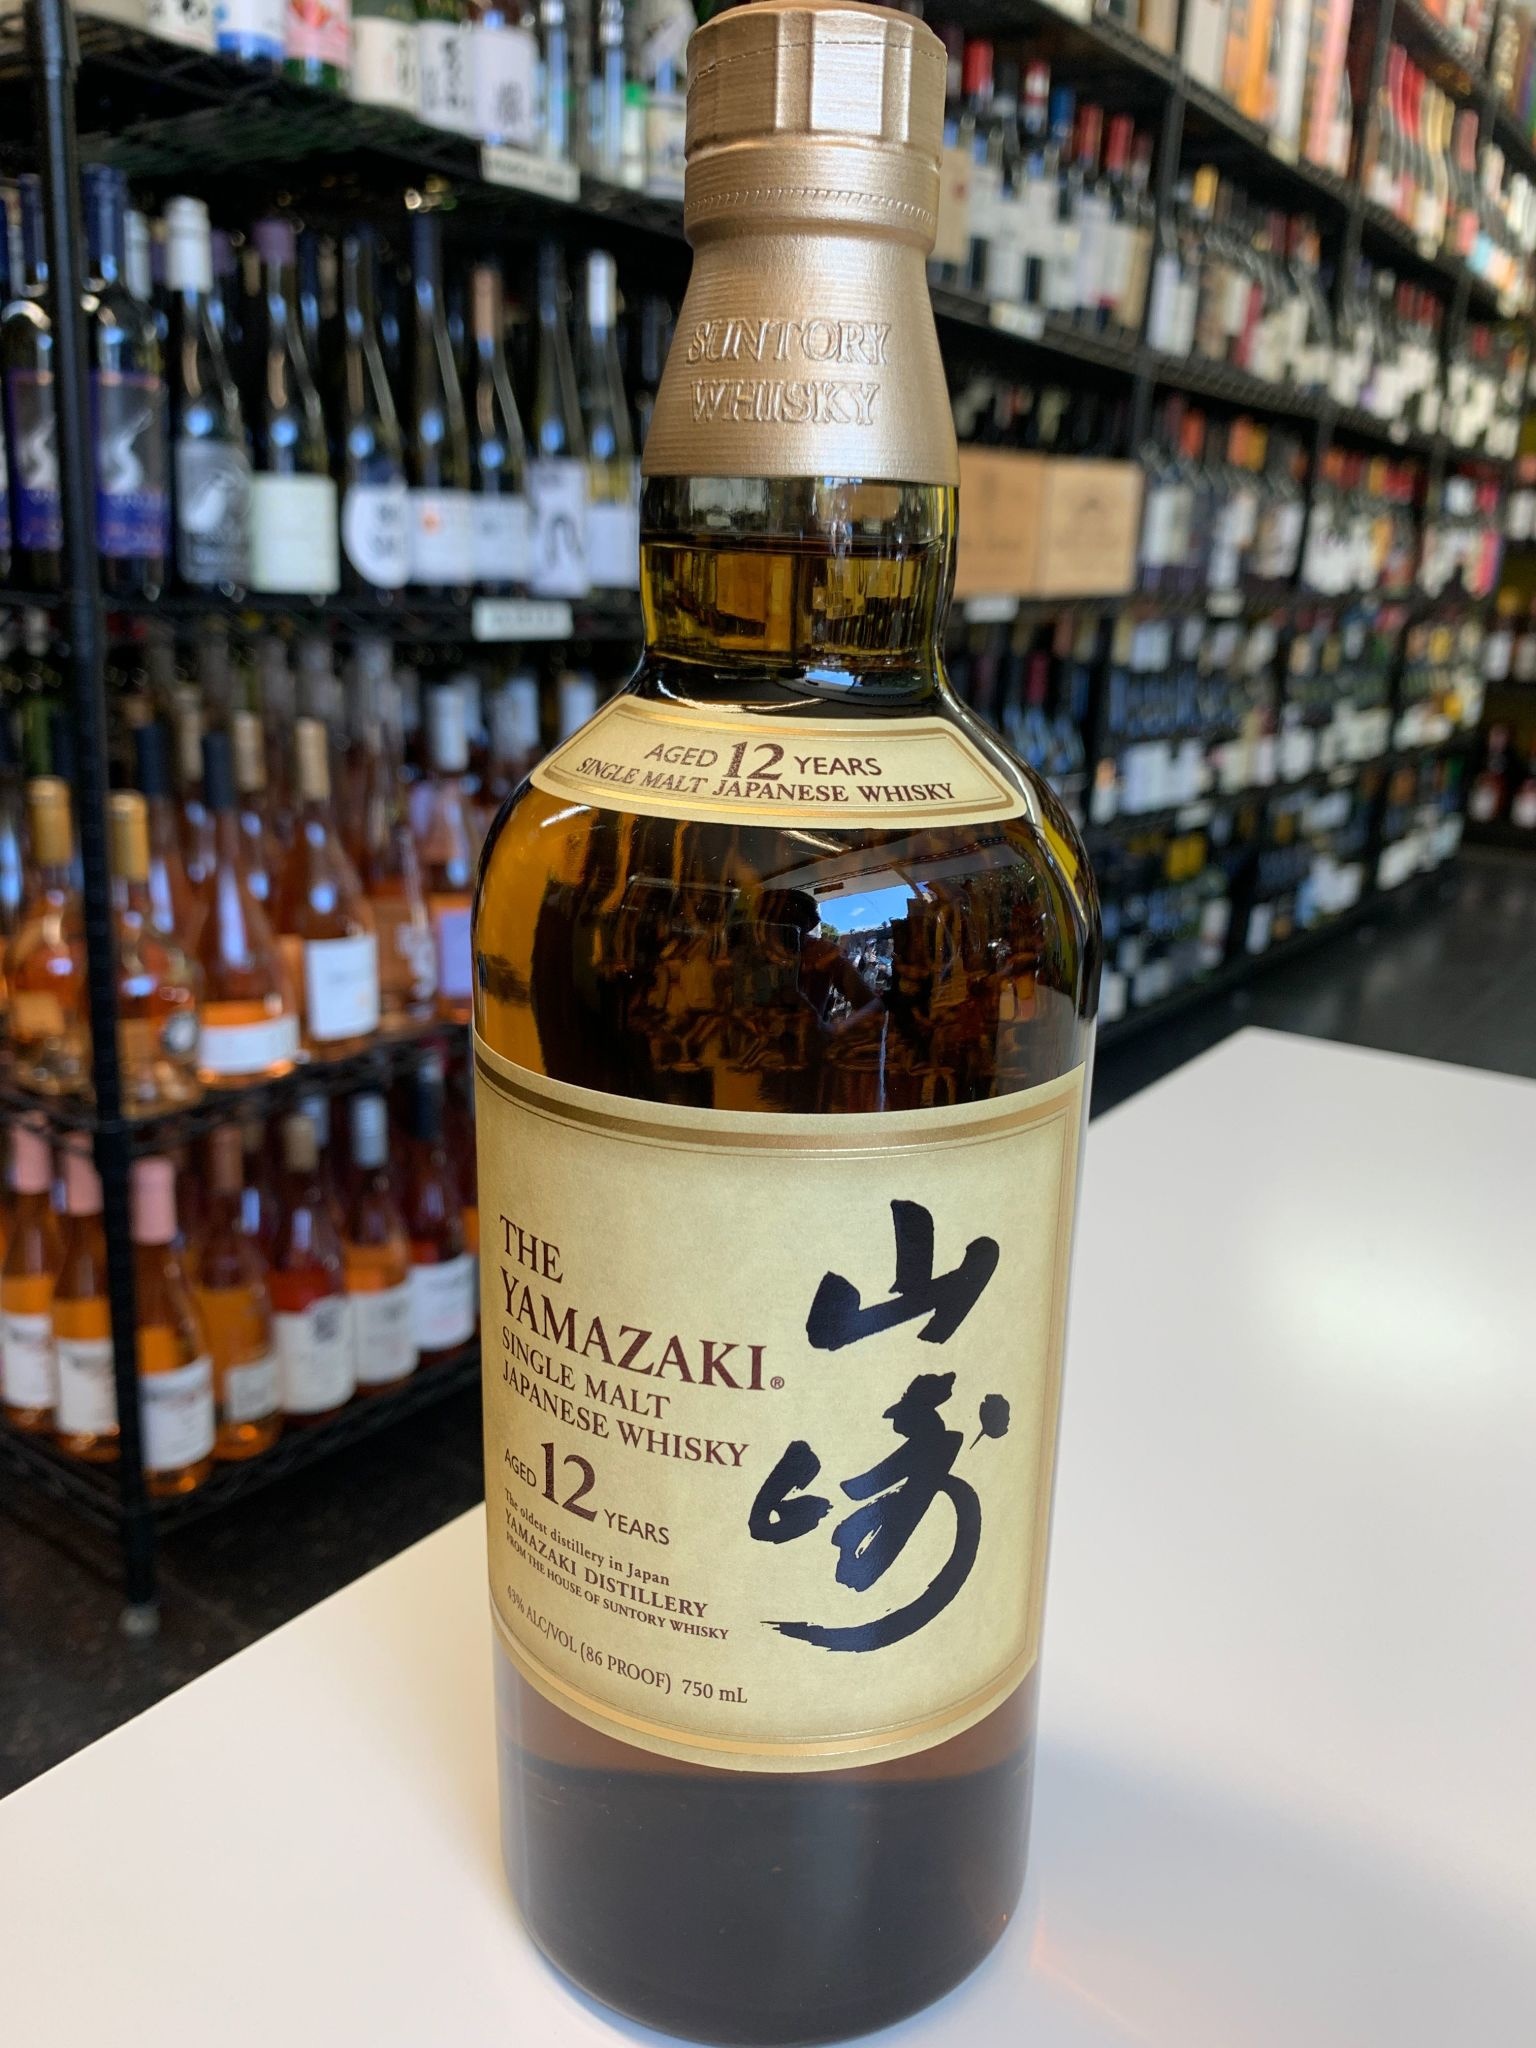 The Yamazaki 12 Years Japanese Single Malt Whisky 750mL